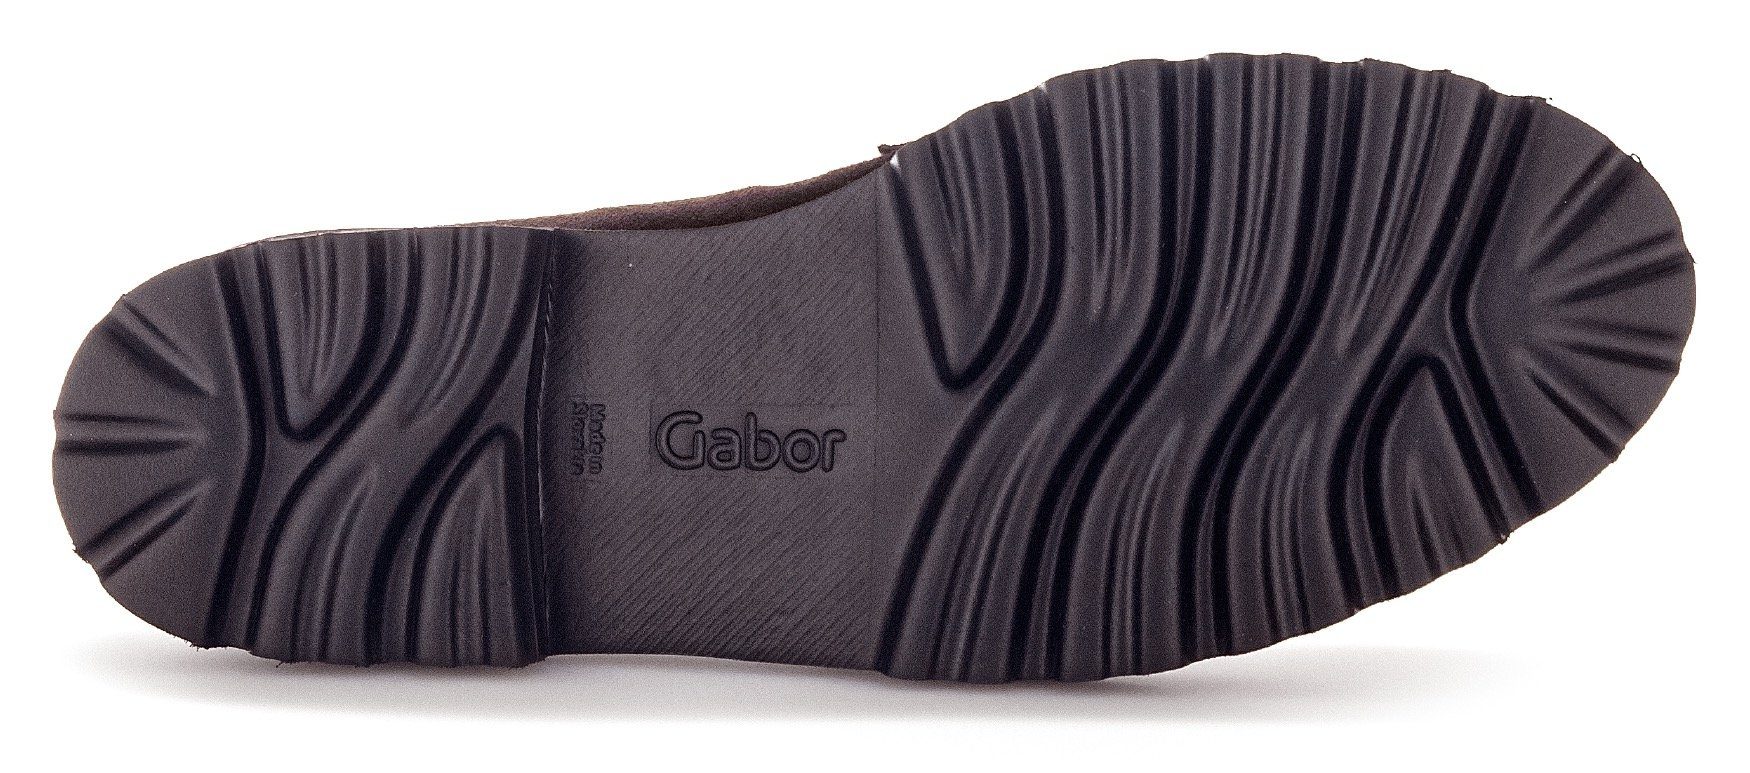 dunkelbraun-schwarz mit Slipper Gabor Fitting-Ausstattung Best